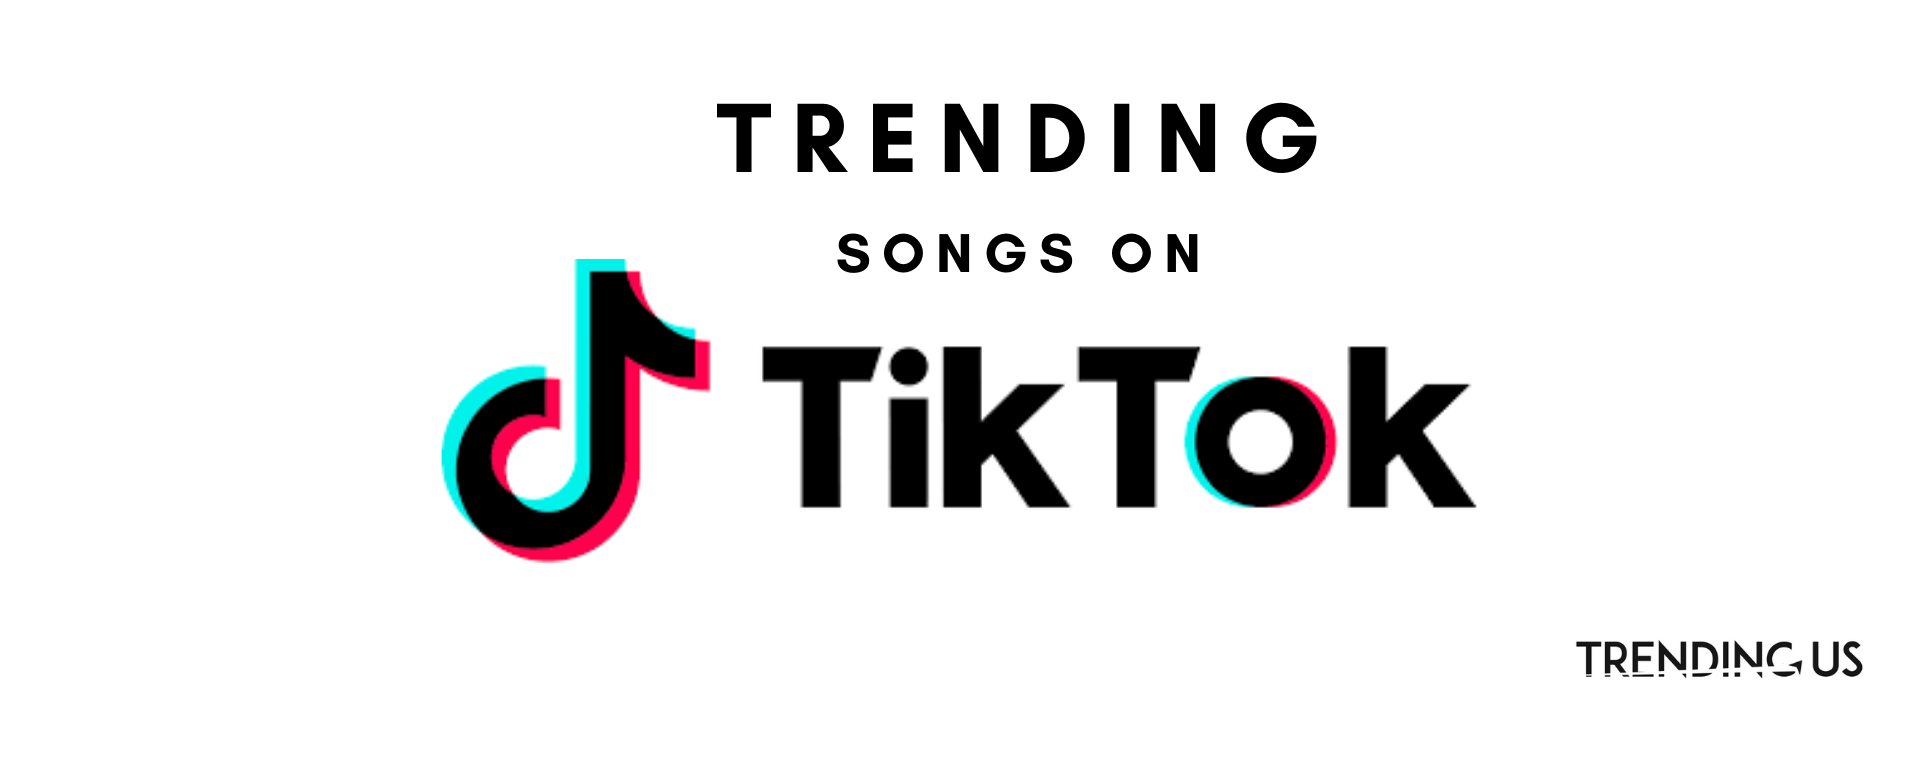 Trending Tiktok Songs